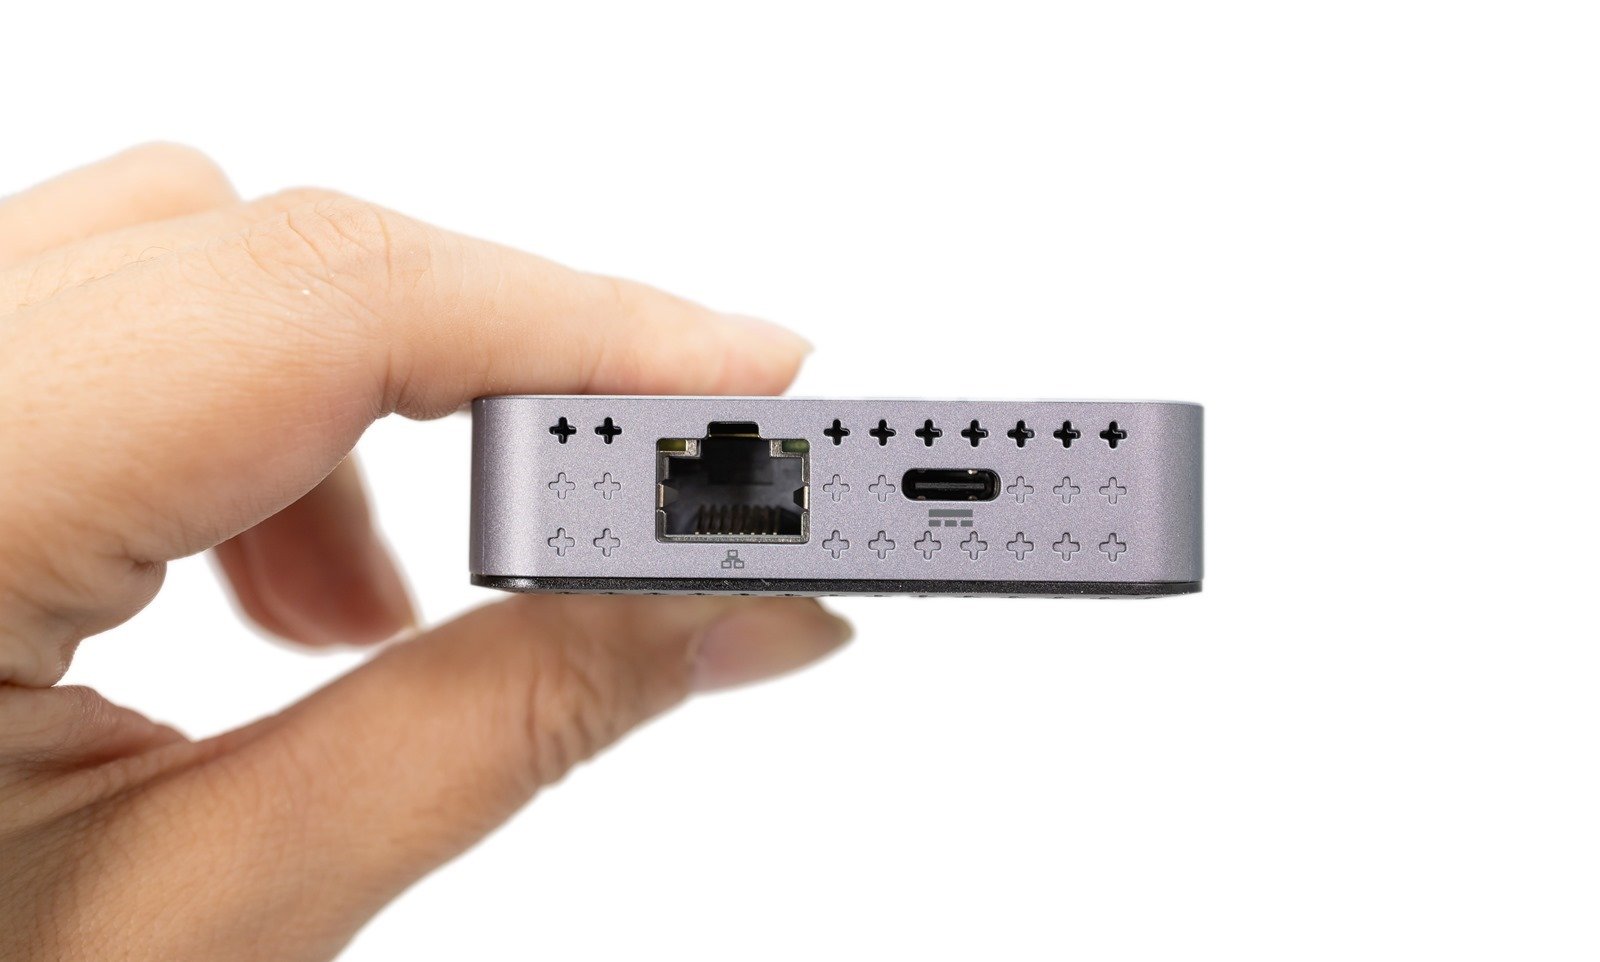 三螢幕也可以！M1/M2 多螢幕神器 HyperDrive DUAL HDMI 10-IN-1 USB-C HUB 開箱實測，同場加映還有輕薄專業款 @3C 達人廖阿輝